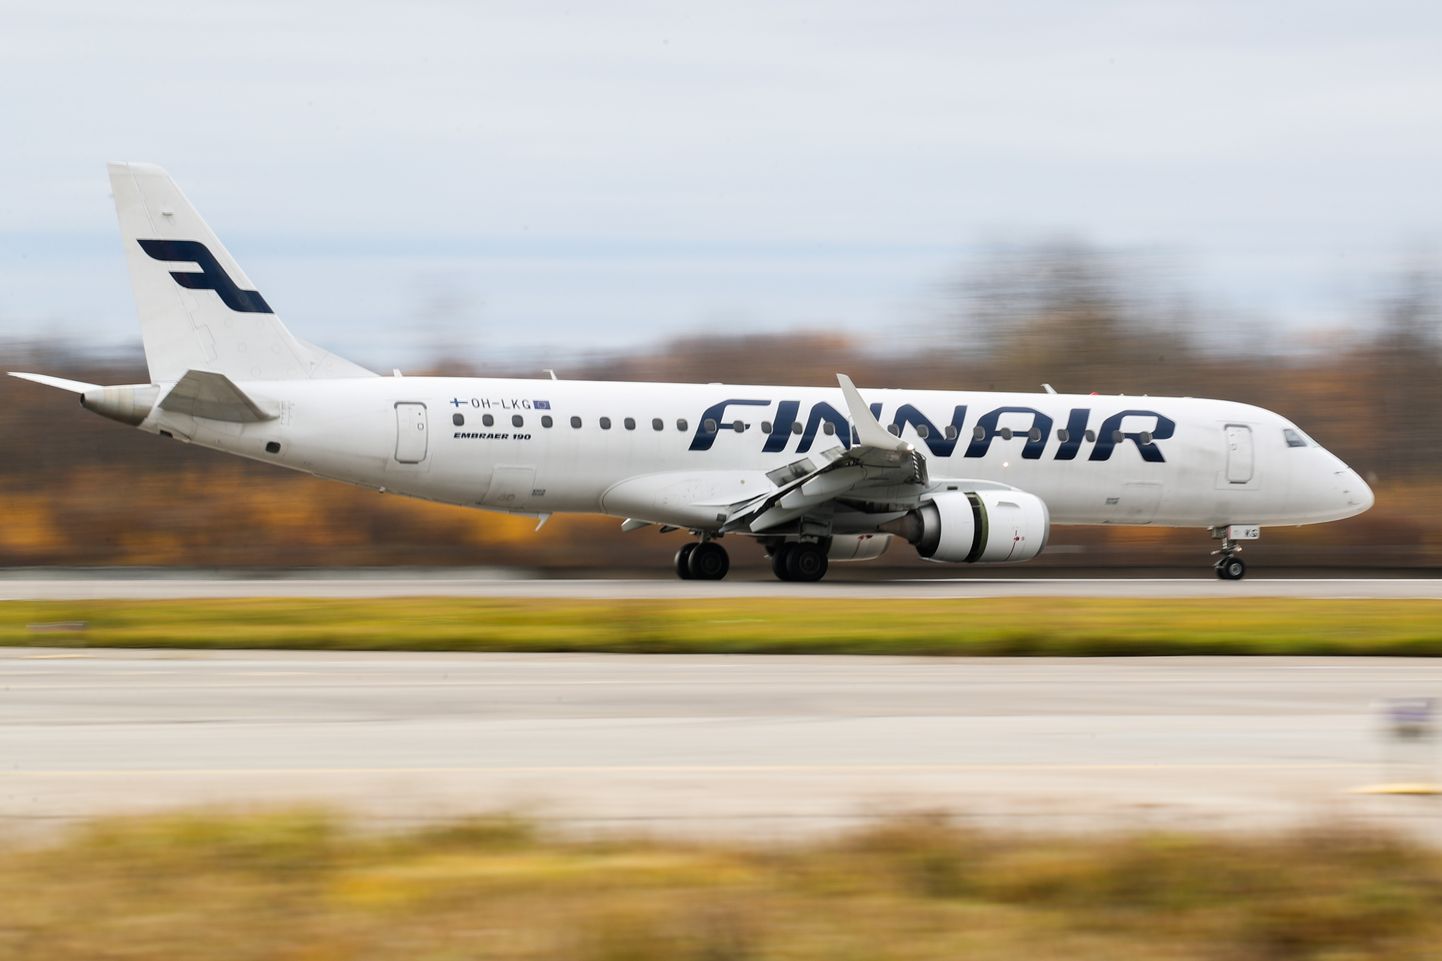 Soome Finnairi lennuk Embraer 190 maandumas Venemaa Peterburi Pulkovo lennujaama lennuväljale